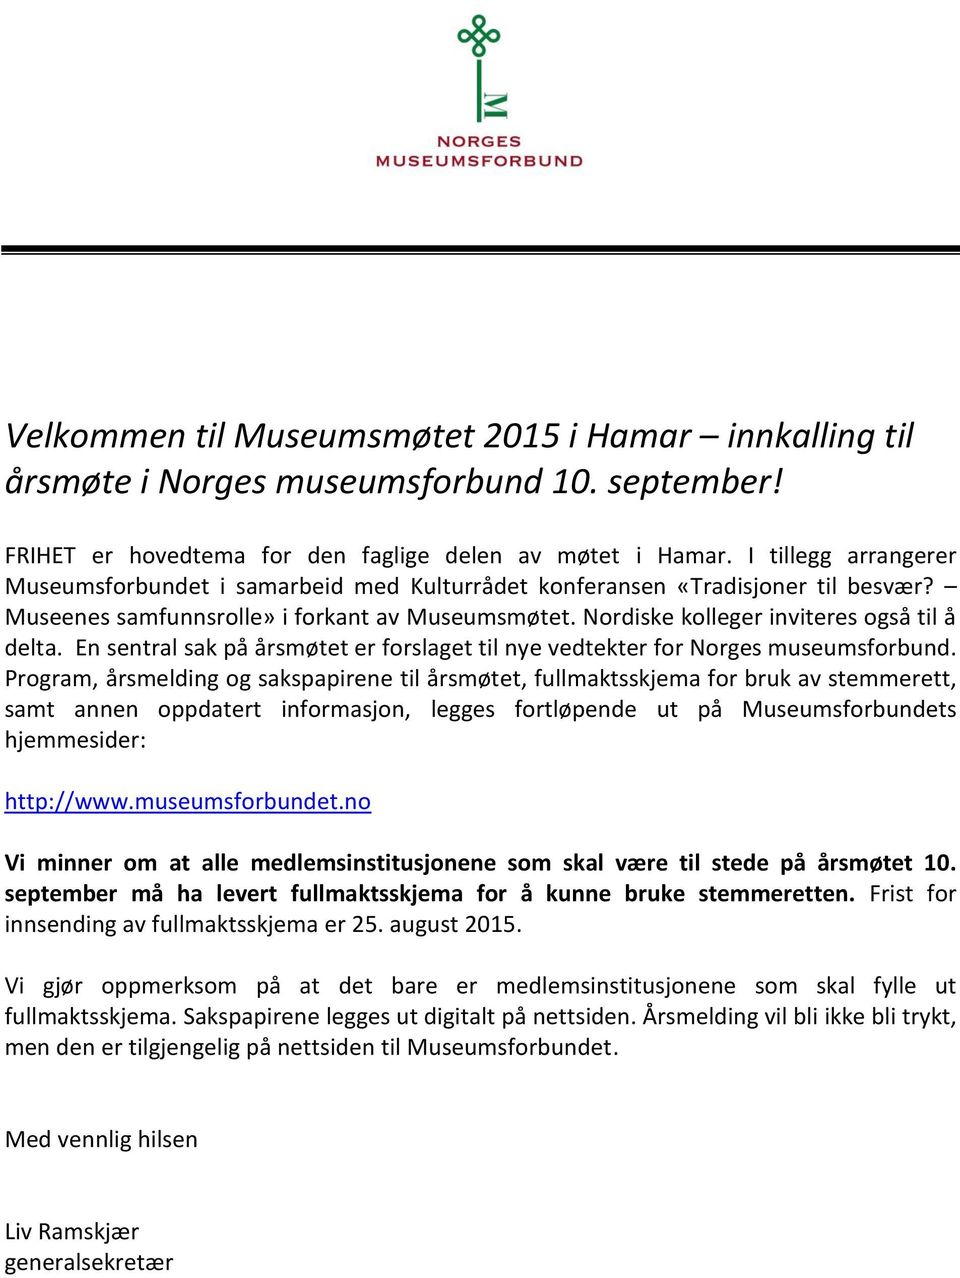 En sentral sak på årsmøtet er forslaget til nye vedtekter for Norges museumsforbund.